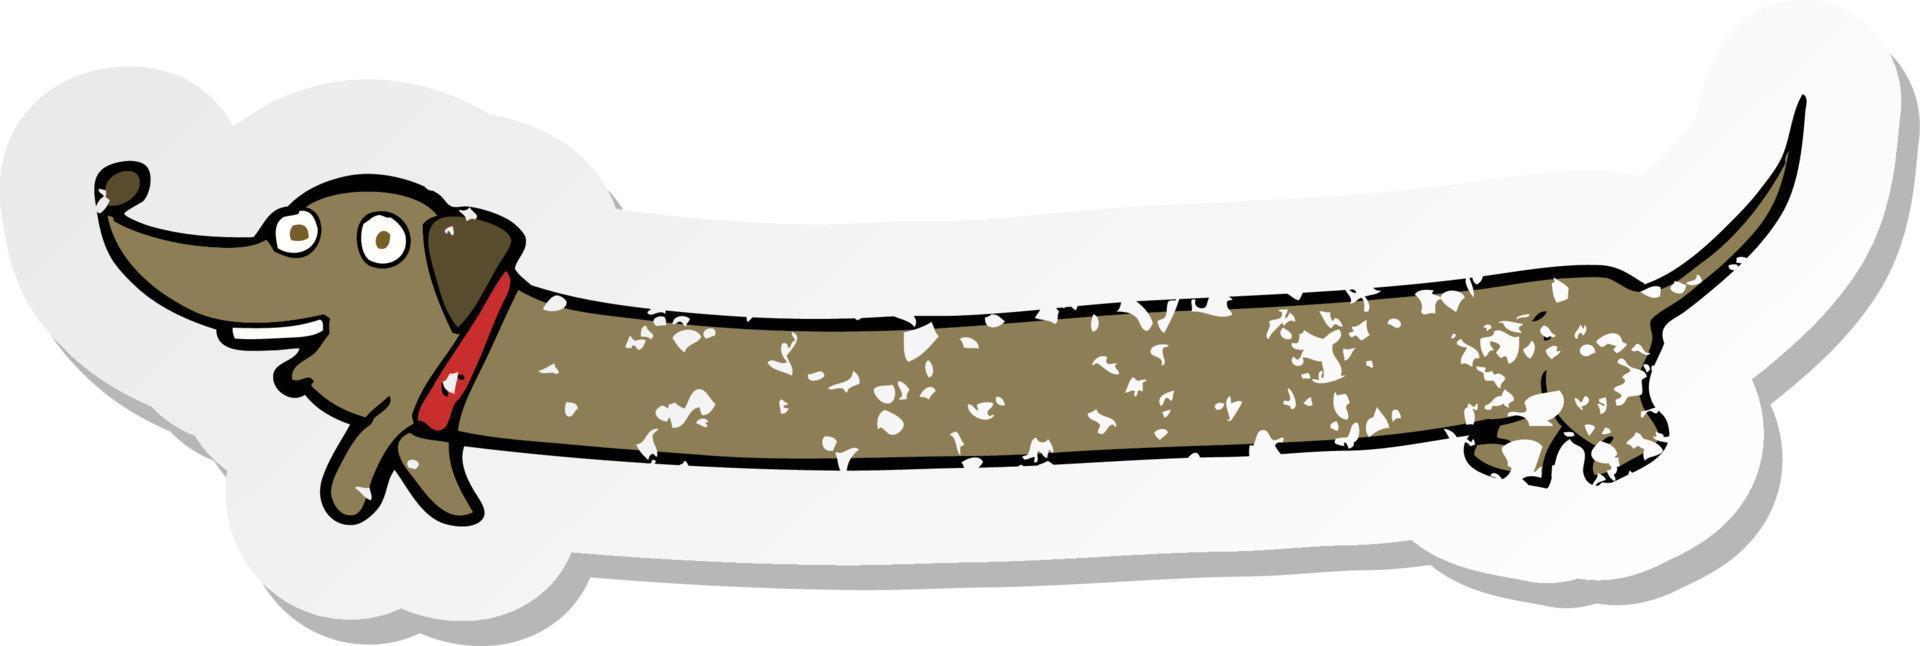 adesivo retrô angustiado de um dachshund de desenho animado vetor